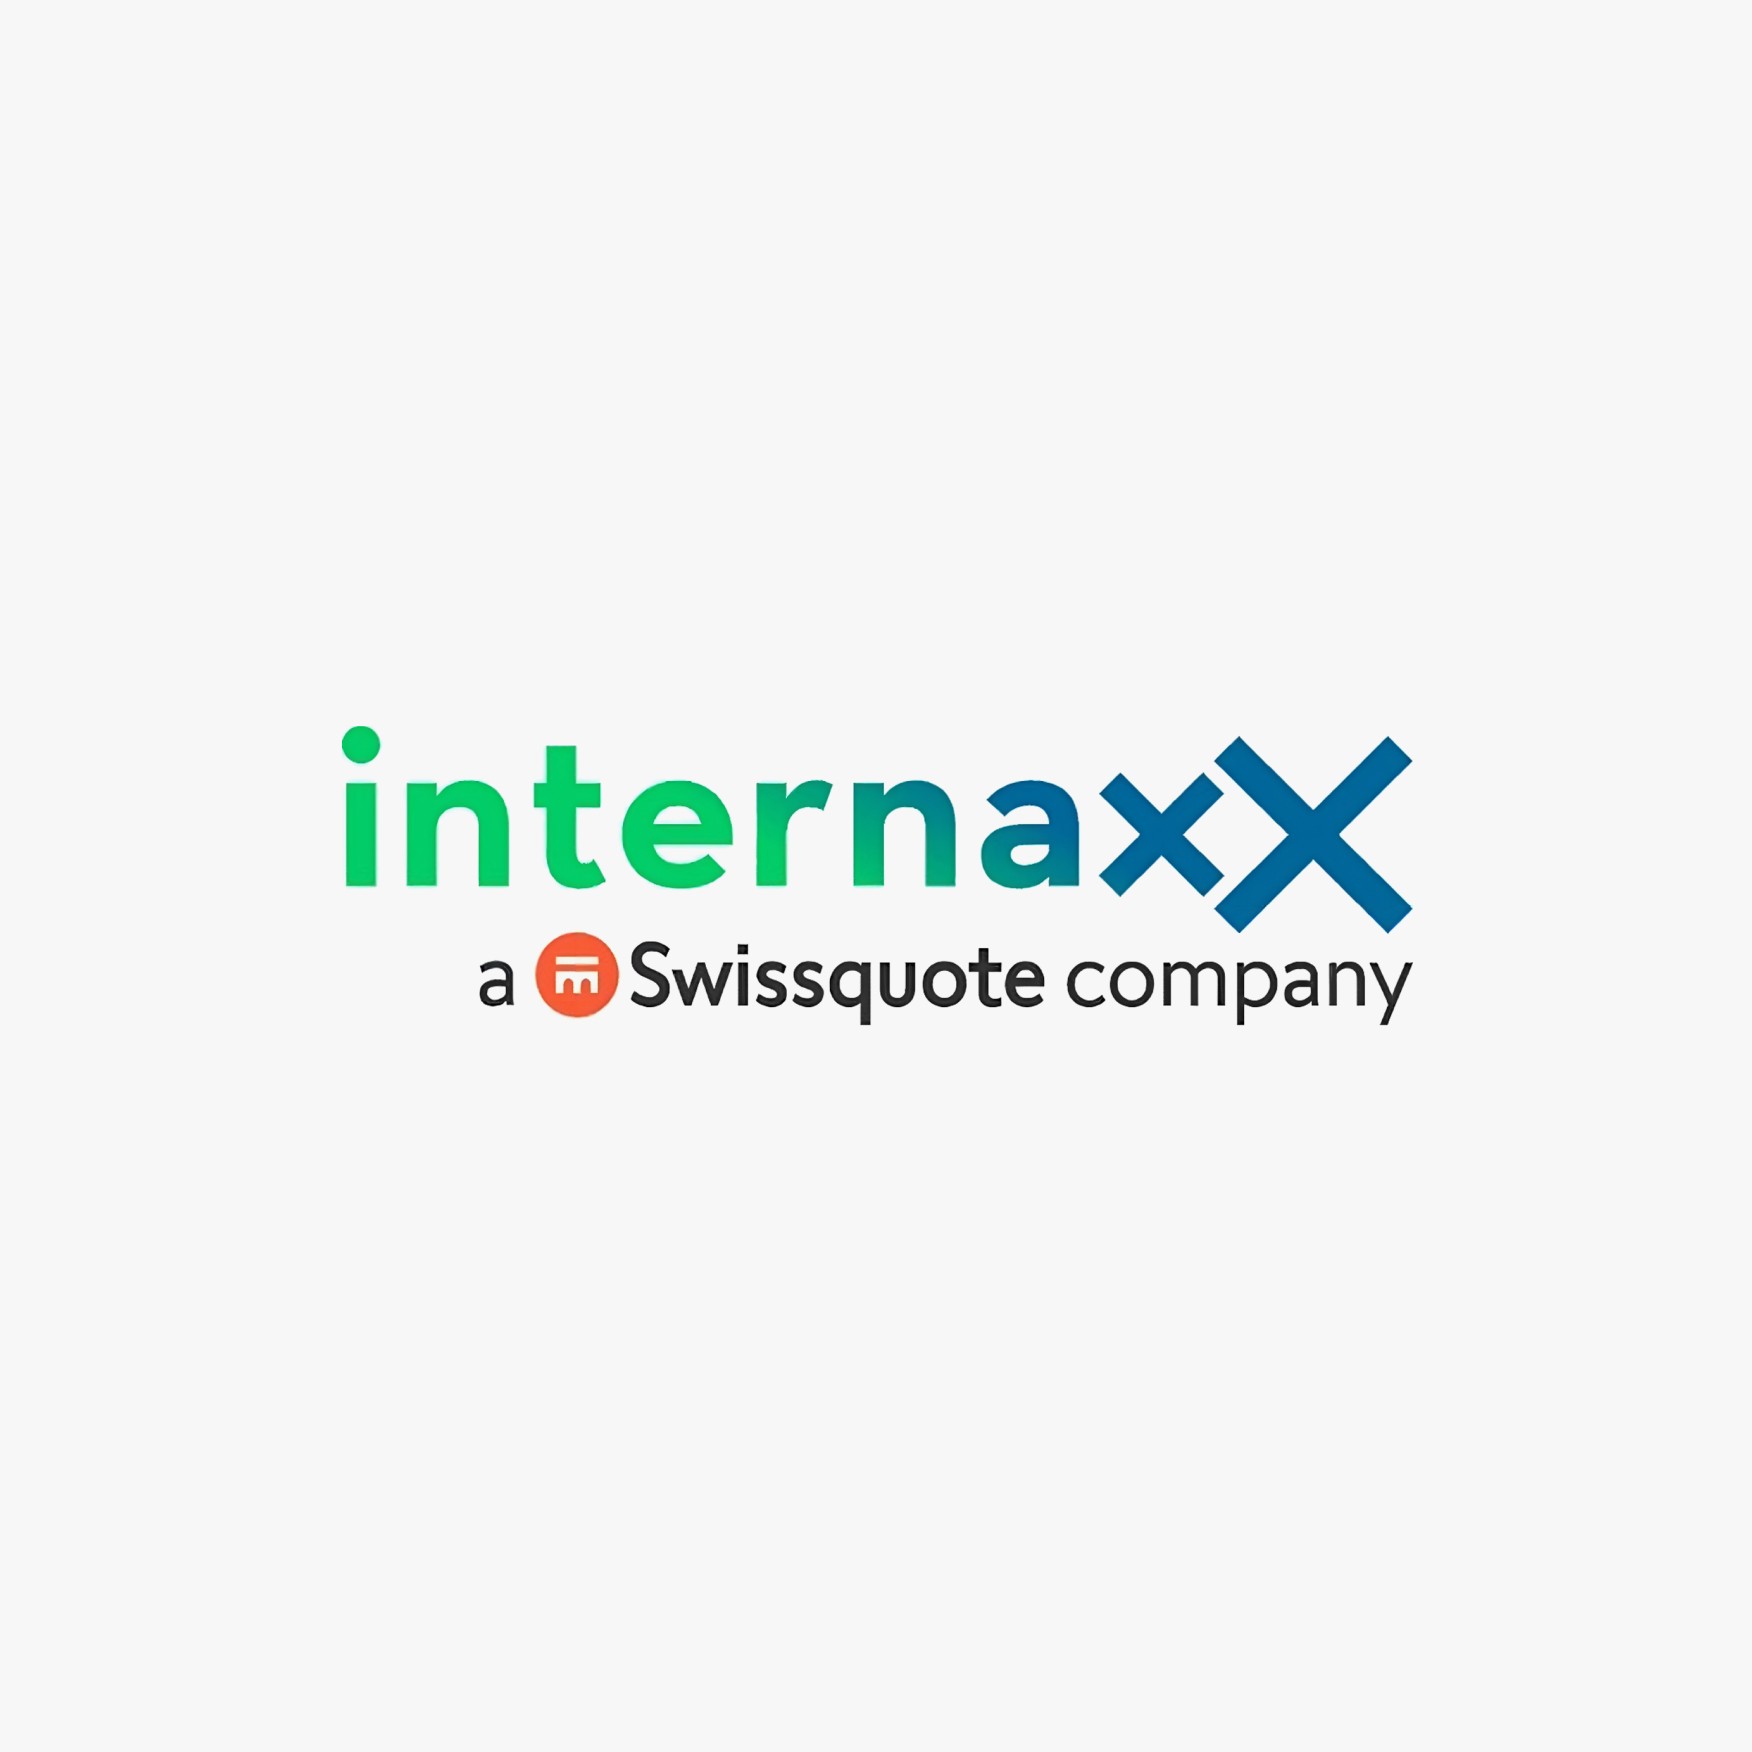 Internaxx logo with Swissquote logo